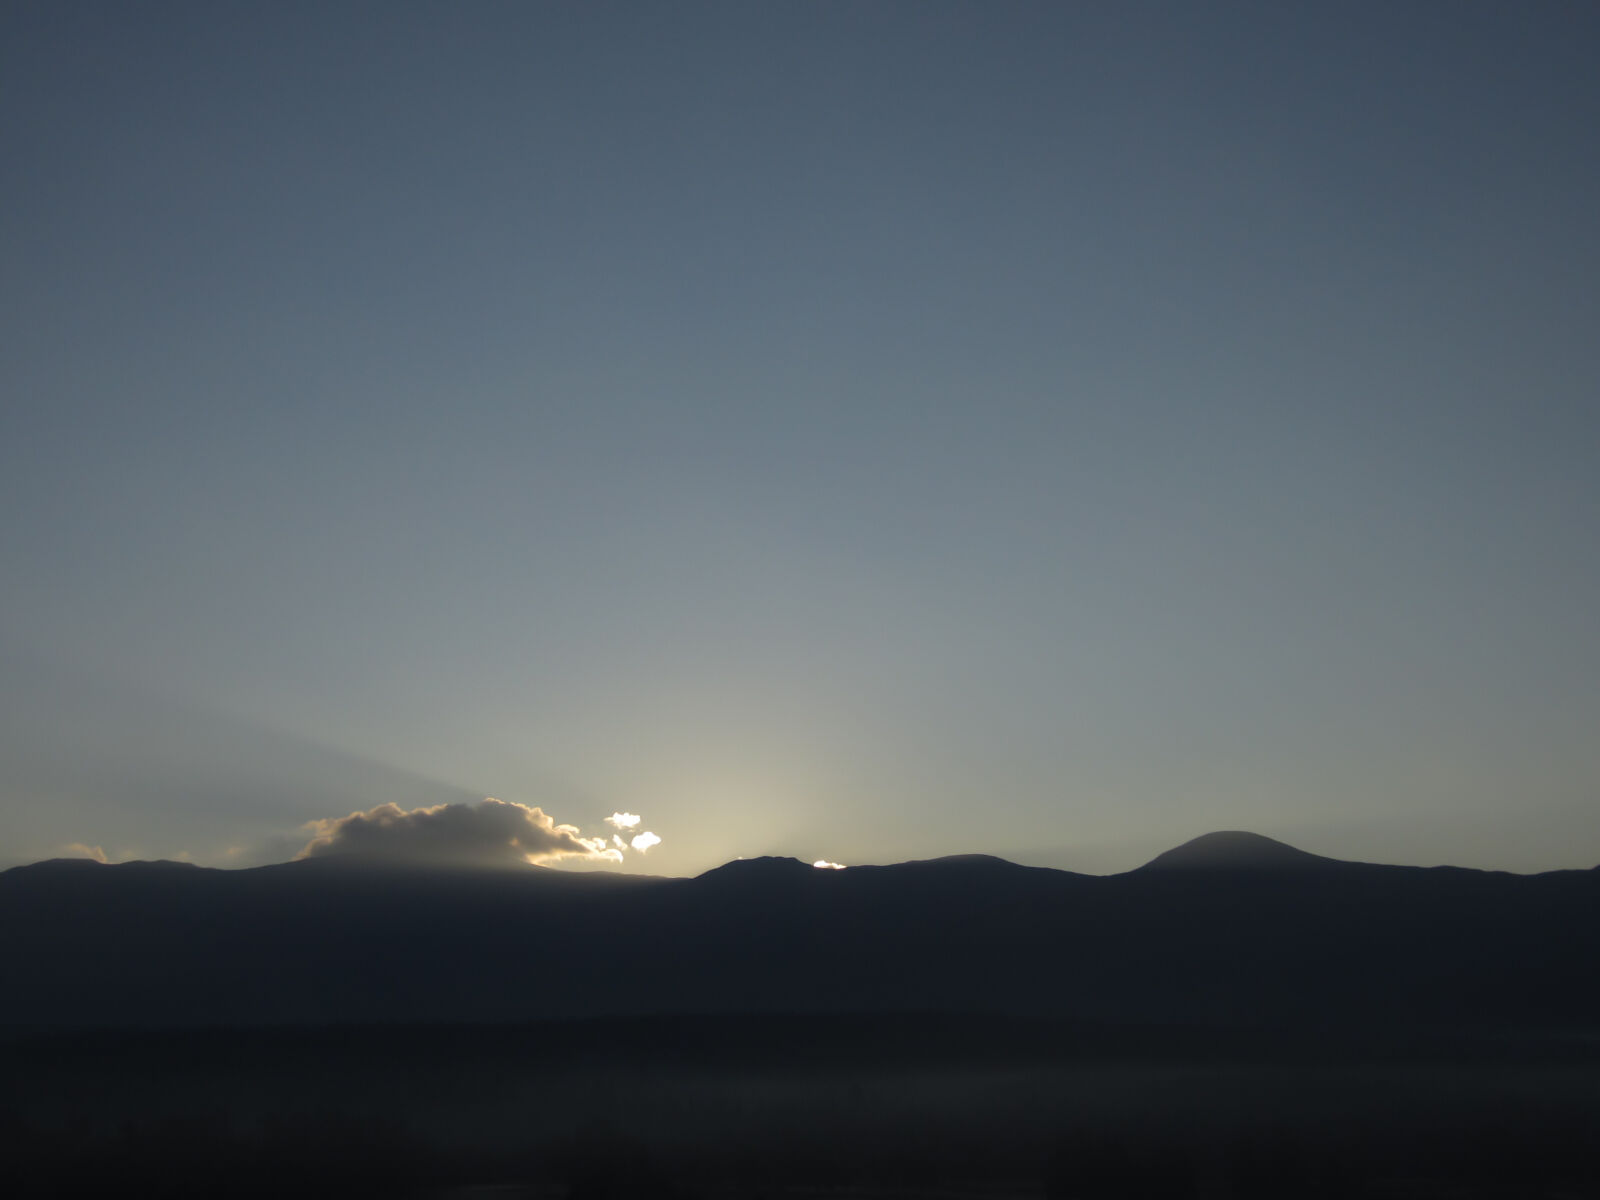 Canon PowerShot ELPH 300 HS (IXUS 220 HS / IXY 410F) sample photo. Sky, sunrise, sunset photography